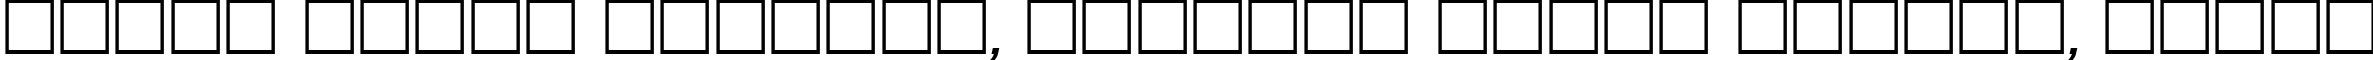 Пример написания шрифтом CompactCTT Italic текста на белорусском